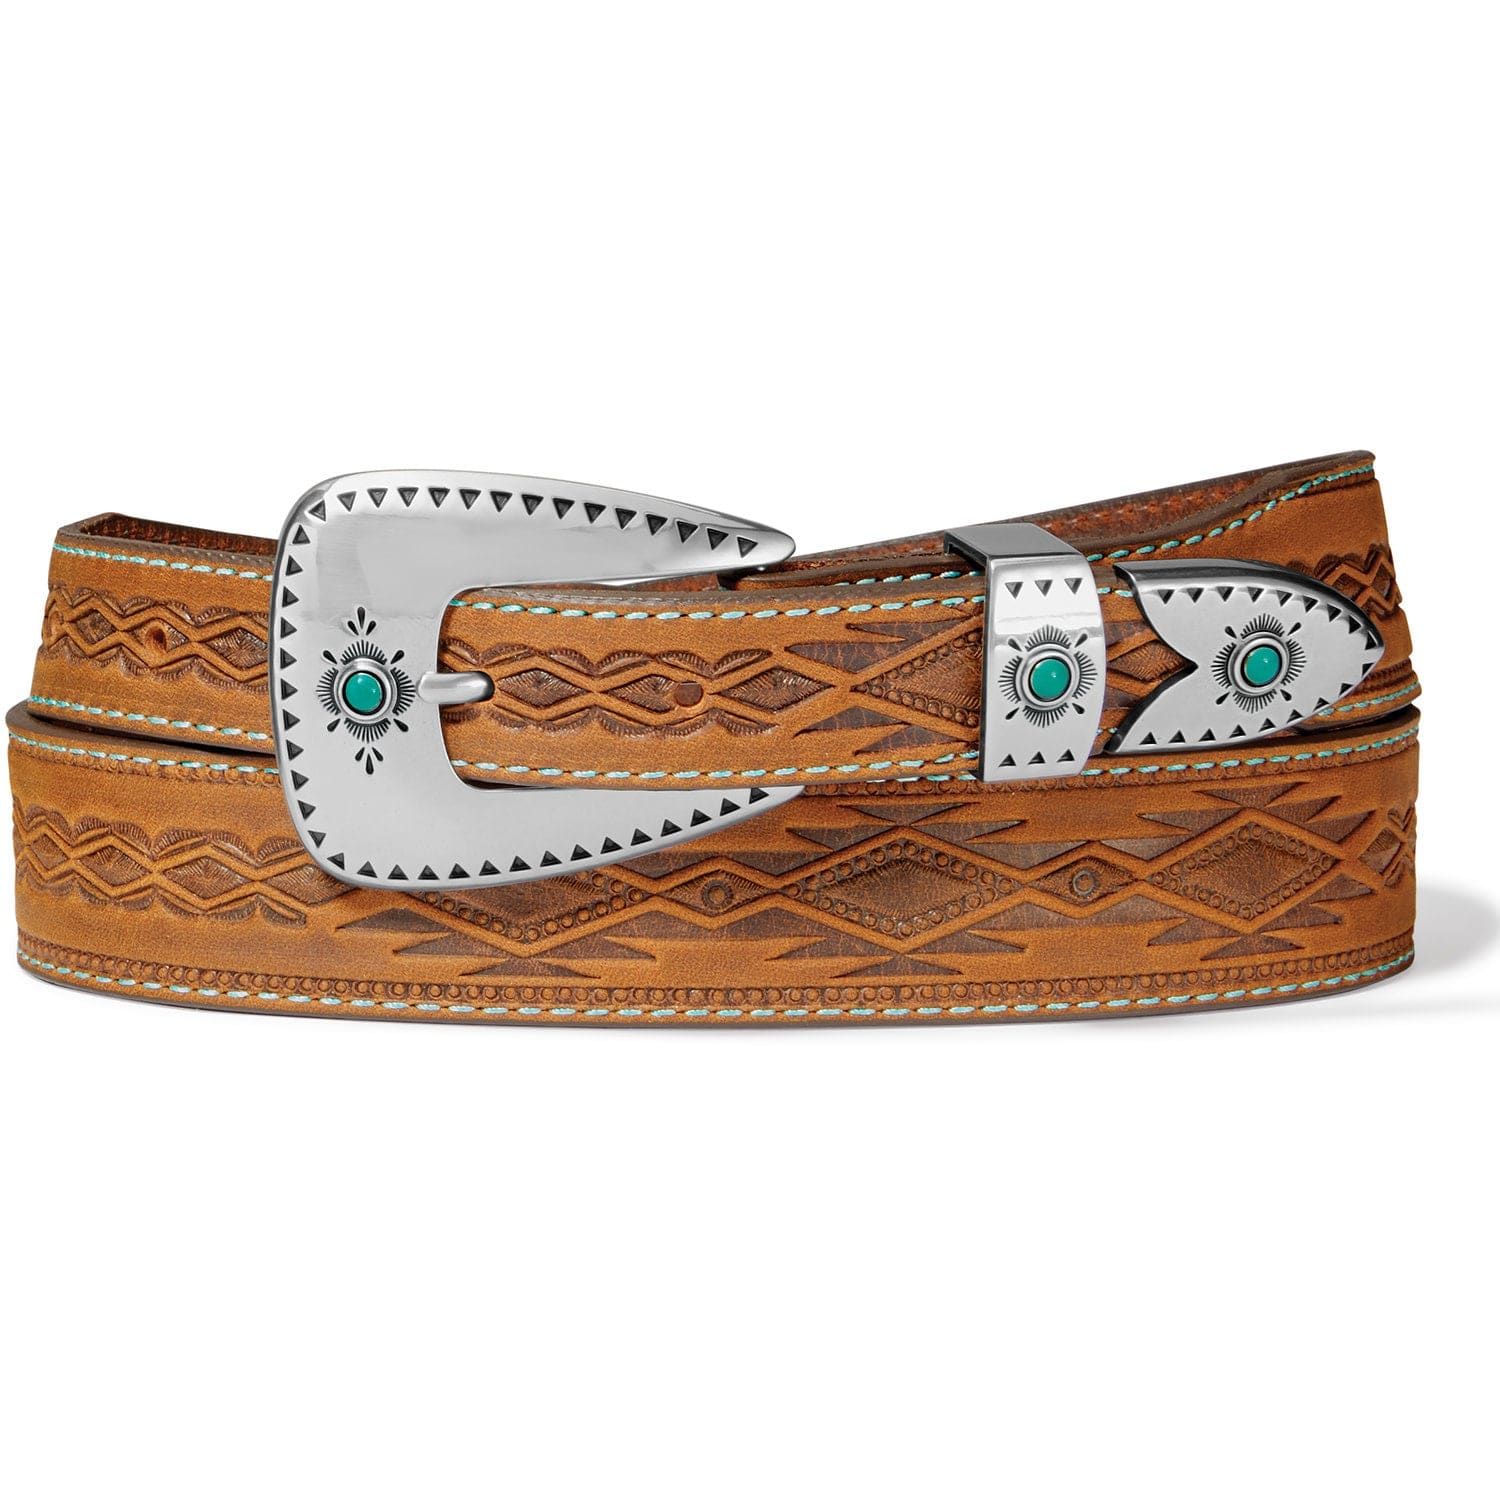 LEEGIN Belts Tony Lama Women's Dakota Southwestern Embossed Belt C51299